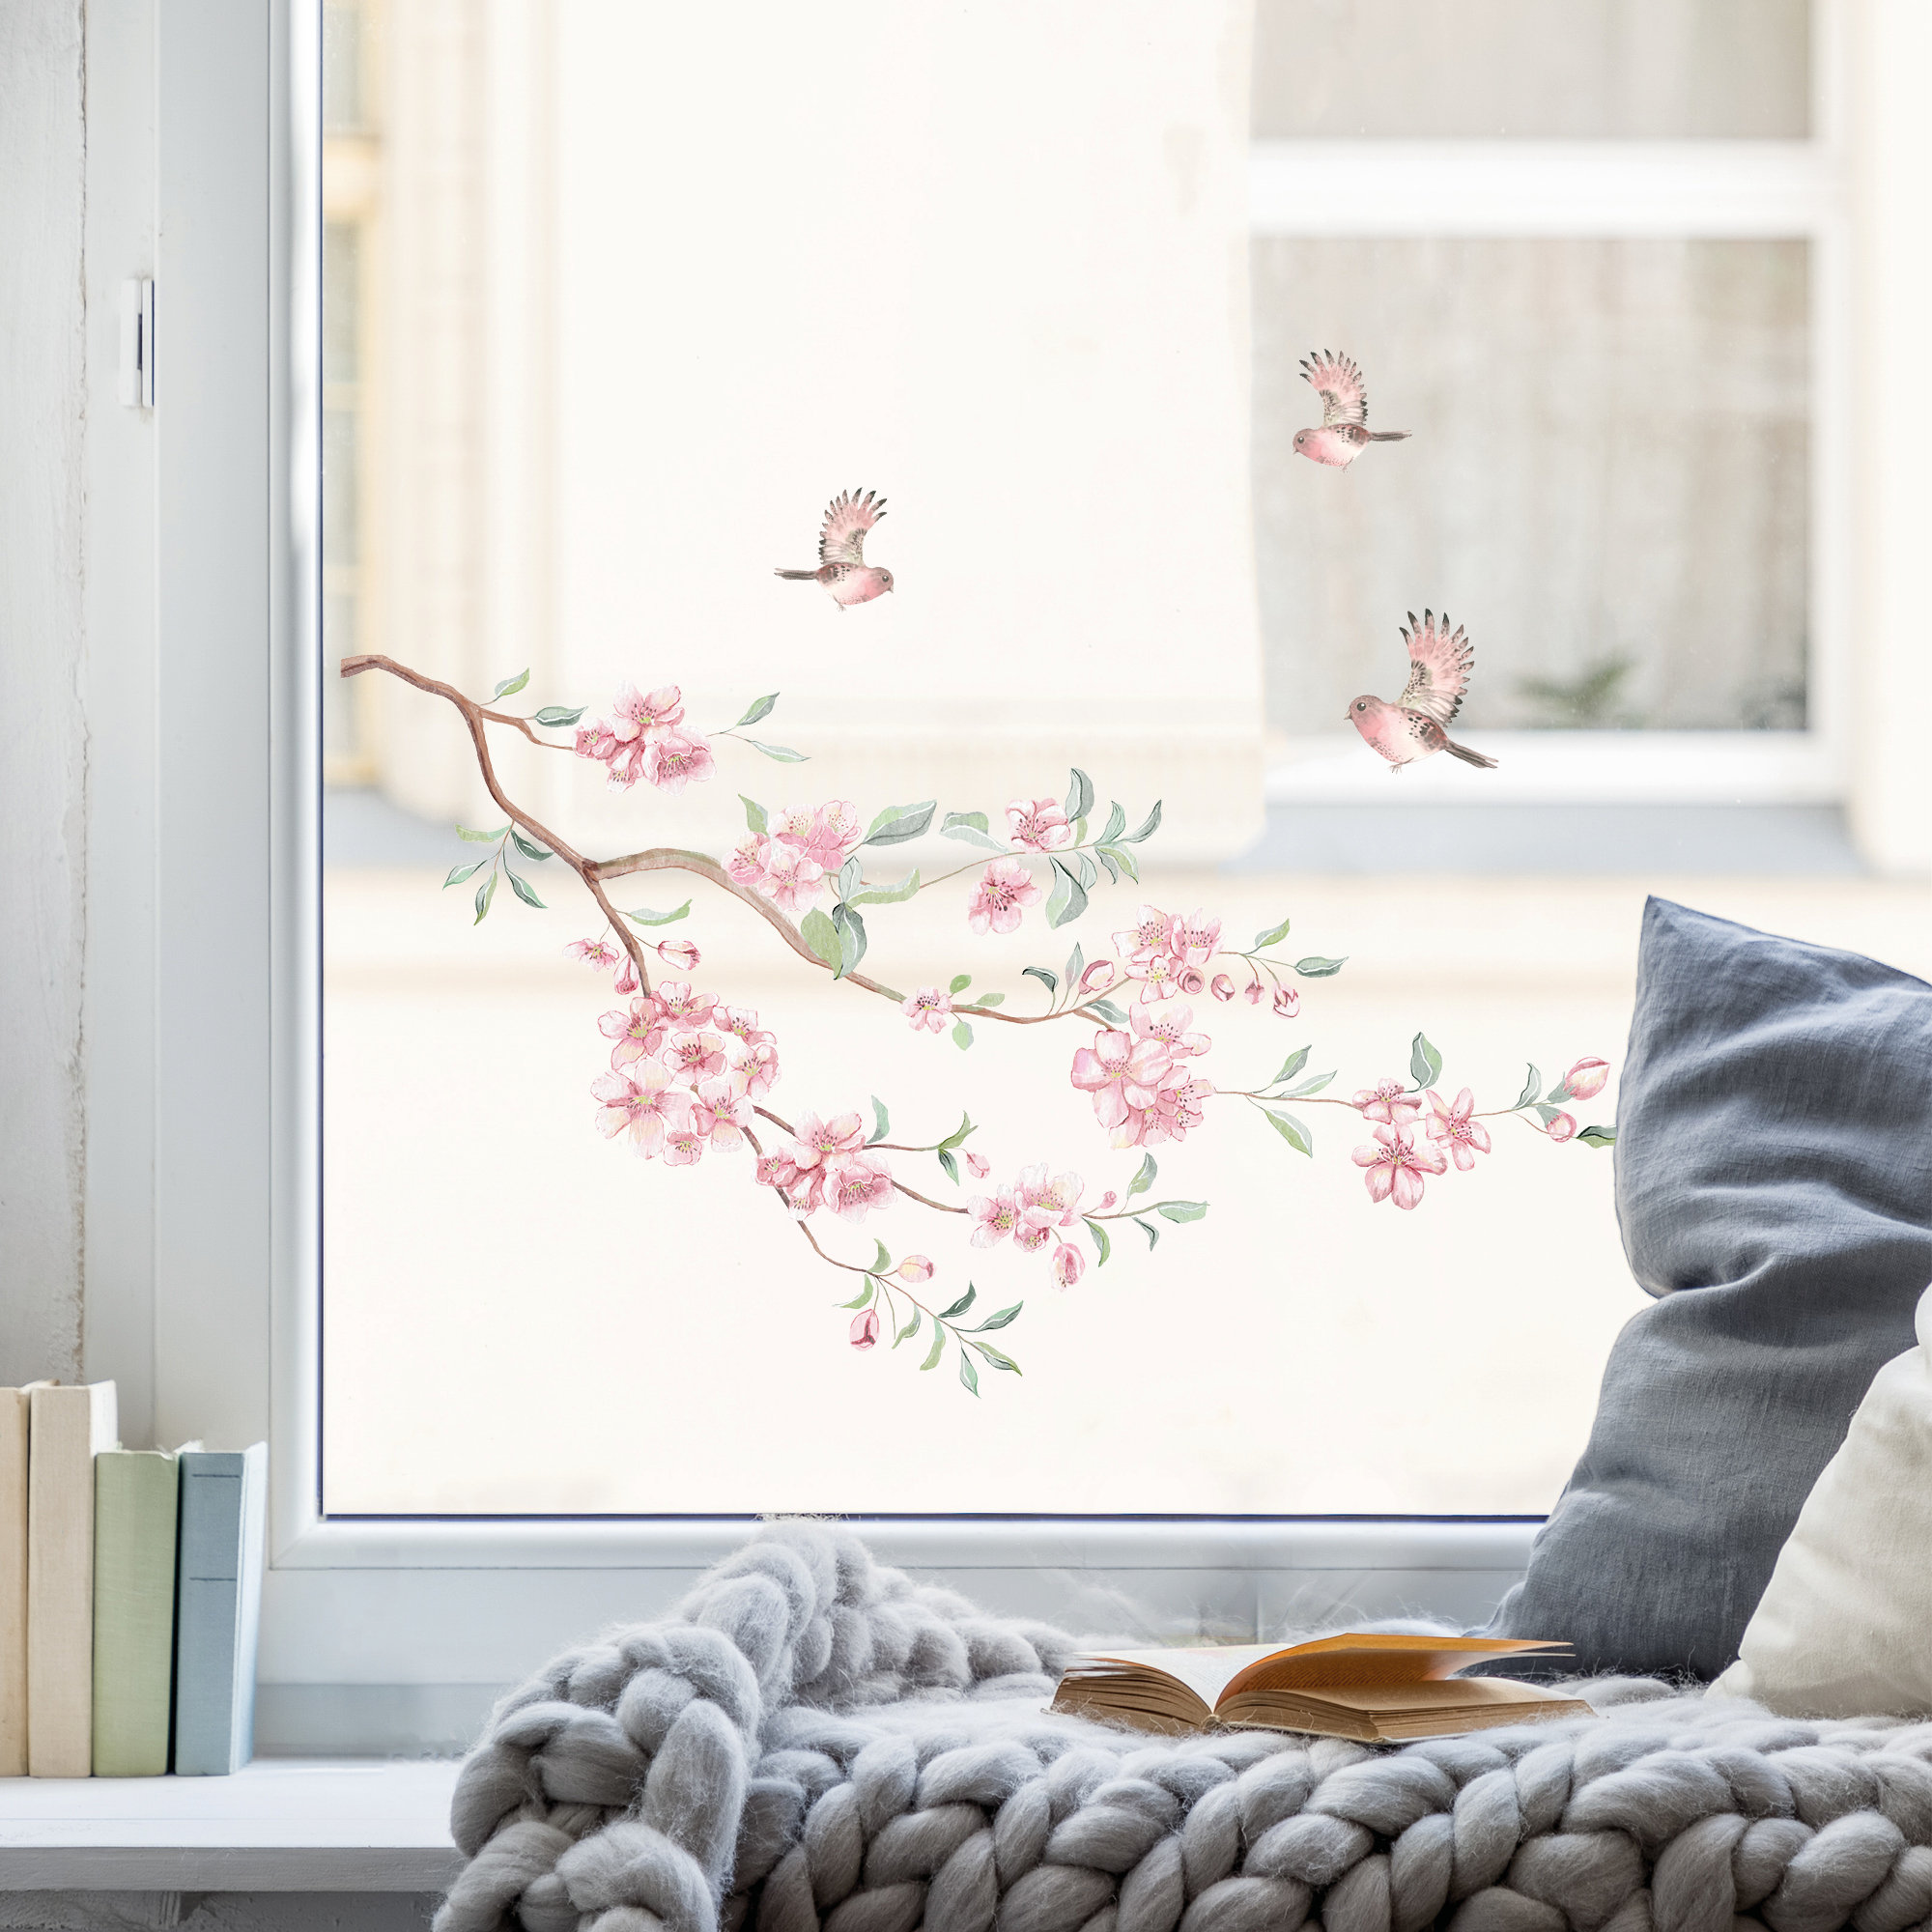 Fensterbild Frühling Kirschblütenzweig mit Vögeln bunt farbig wiederverwendbare Fensteraufkleber Kinderzimmer Baby Kind, Osterdeko